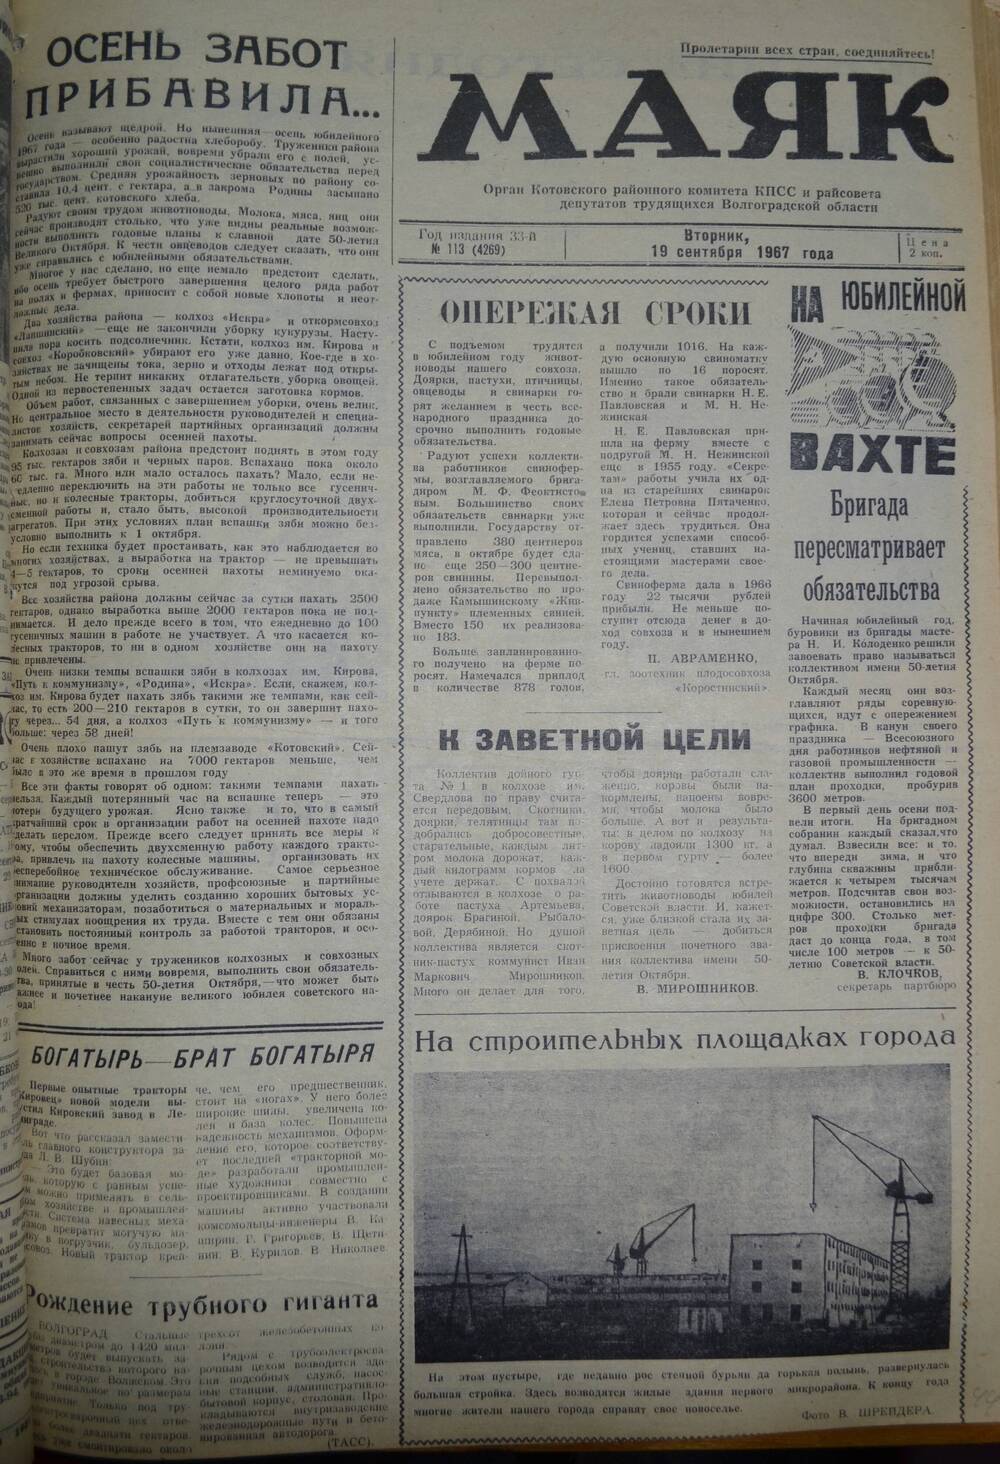 Газета Маяк № 113 (4269). Вторник, 19 сентября 1967 года.